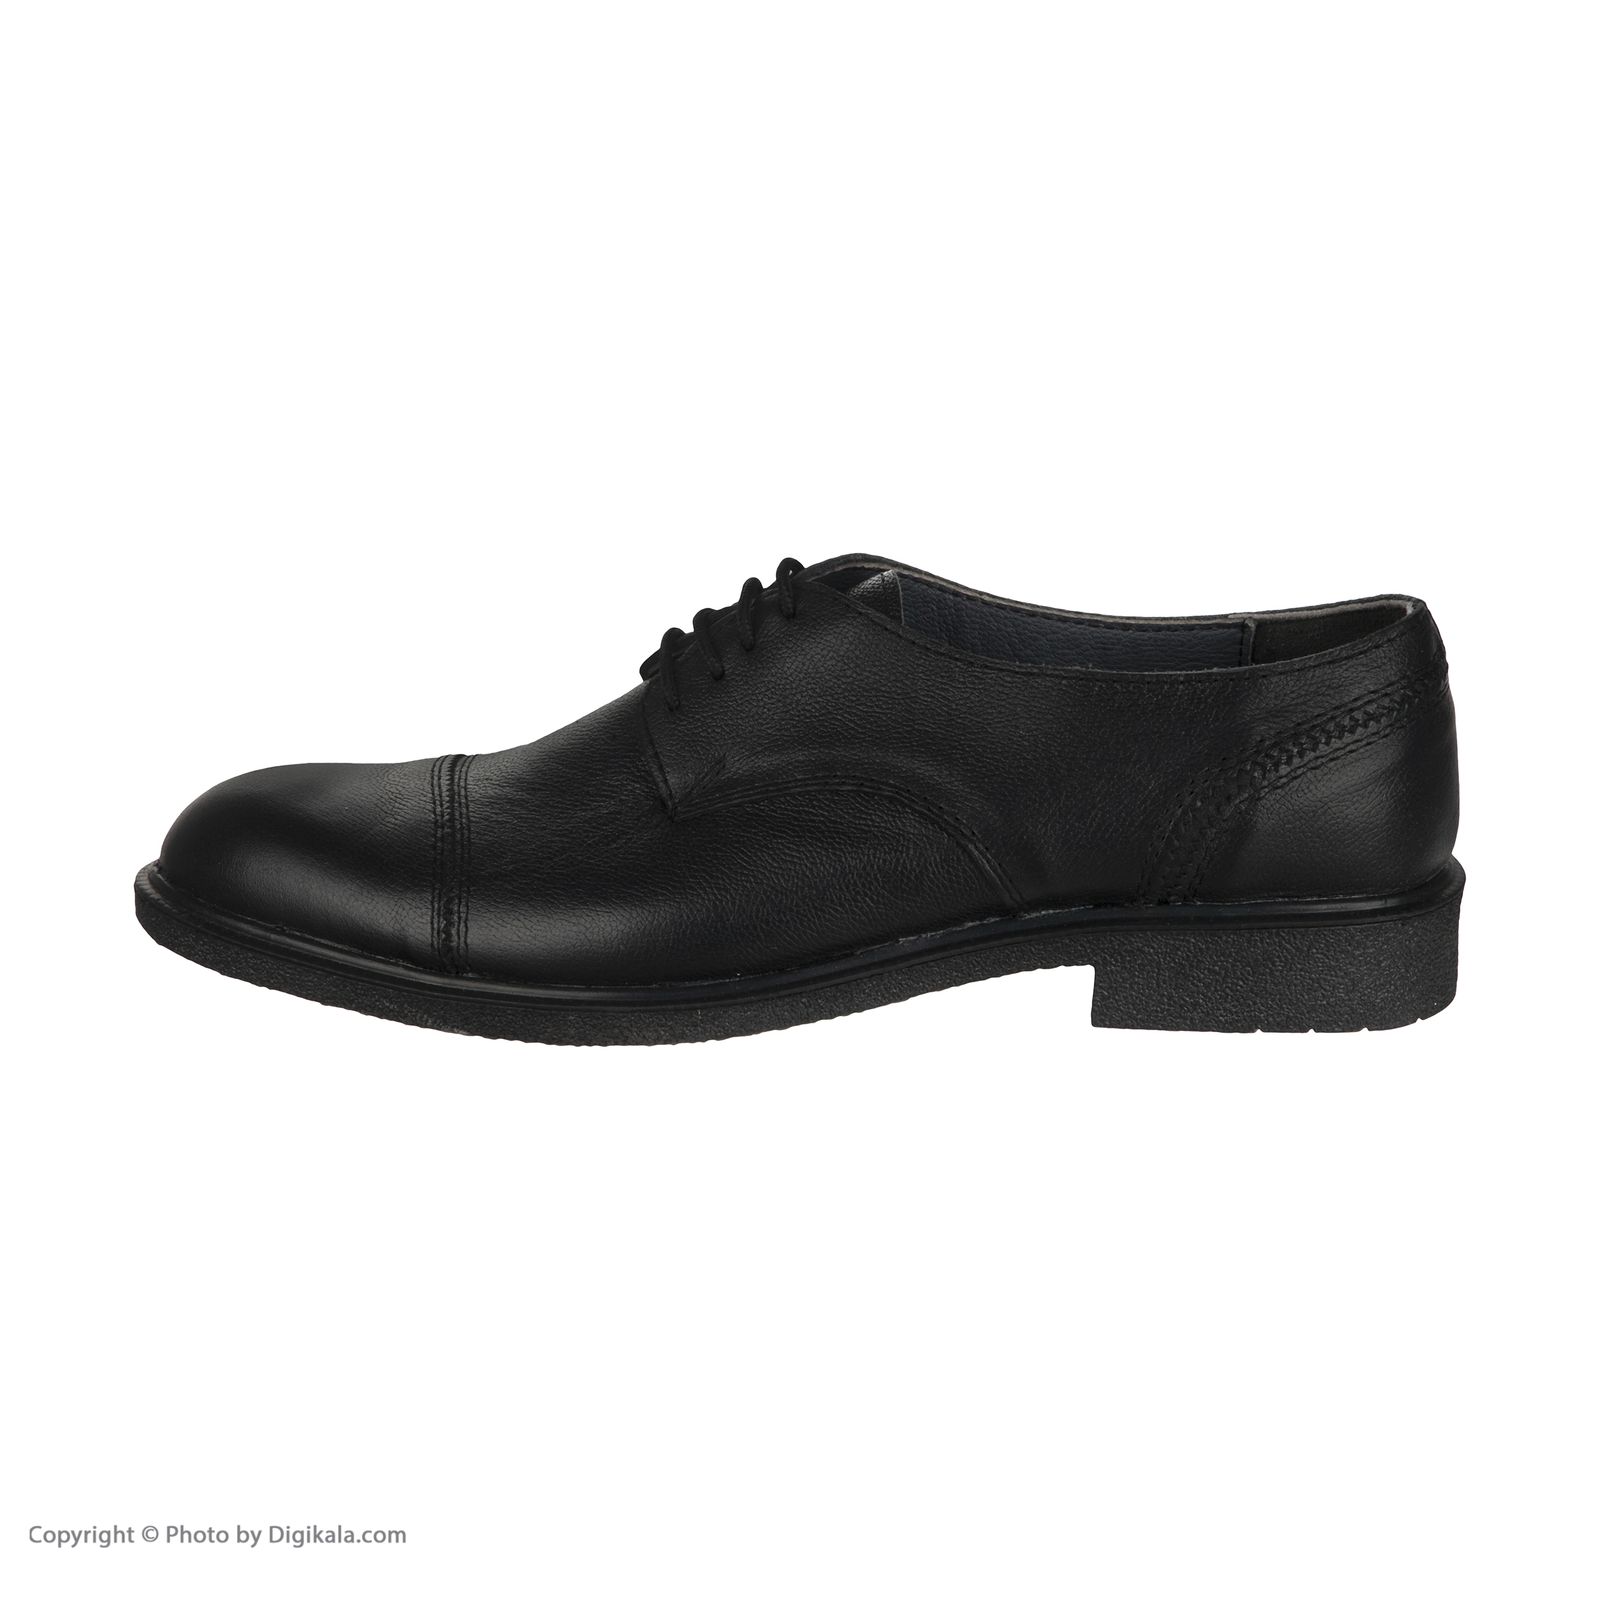  کفش مردانه سوته مدل 4870F503101 -  - 2